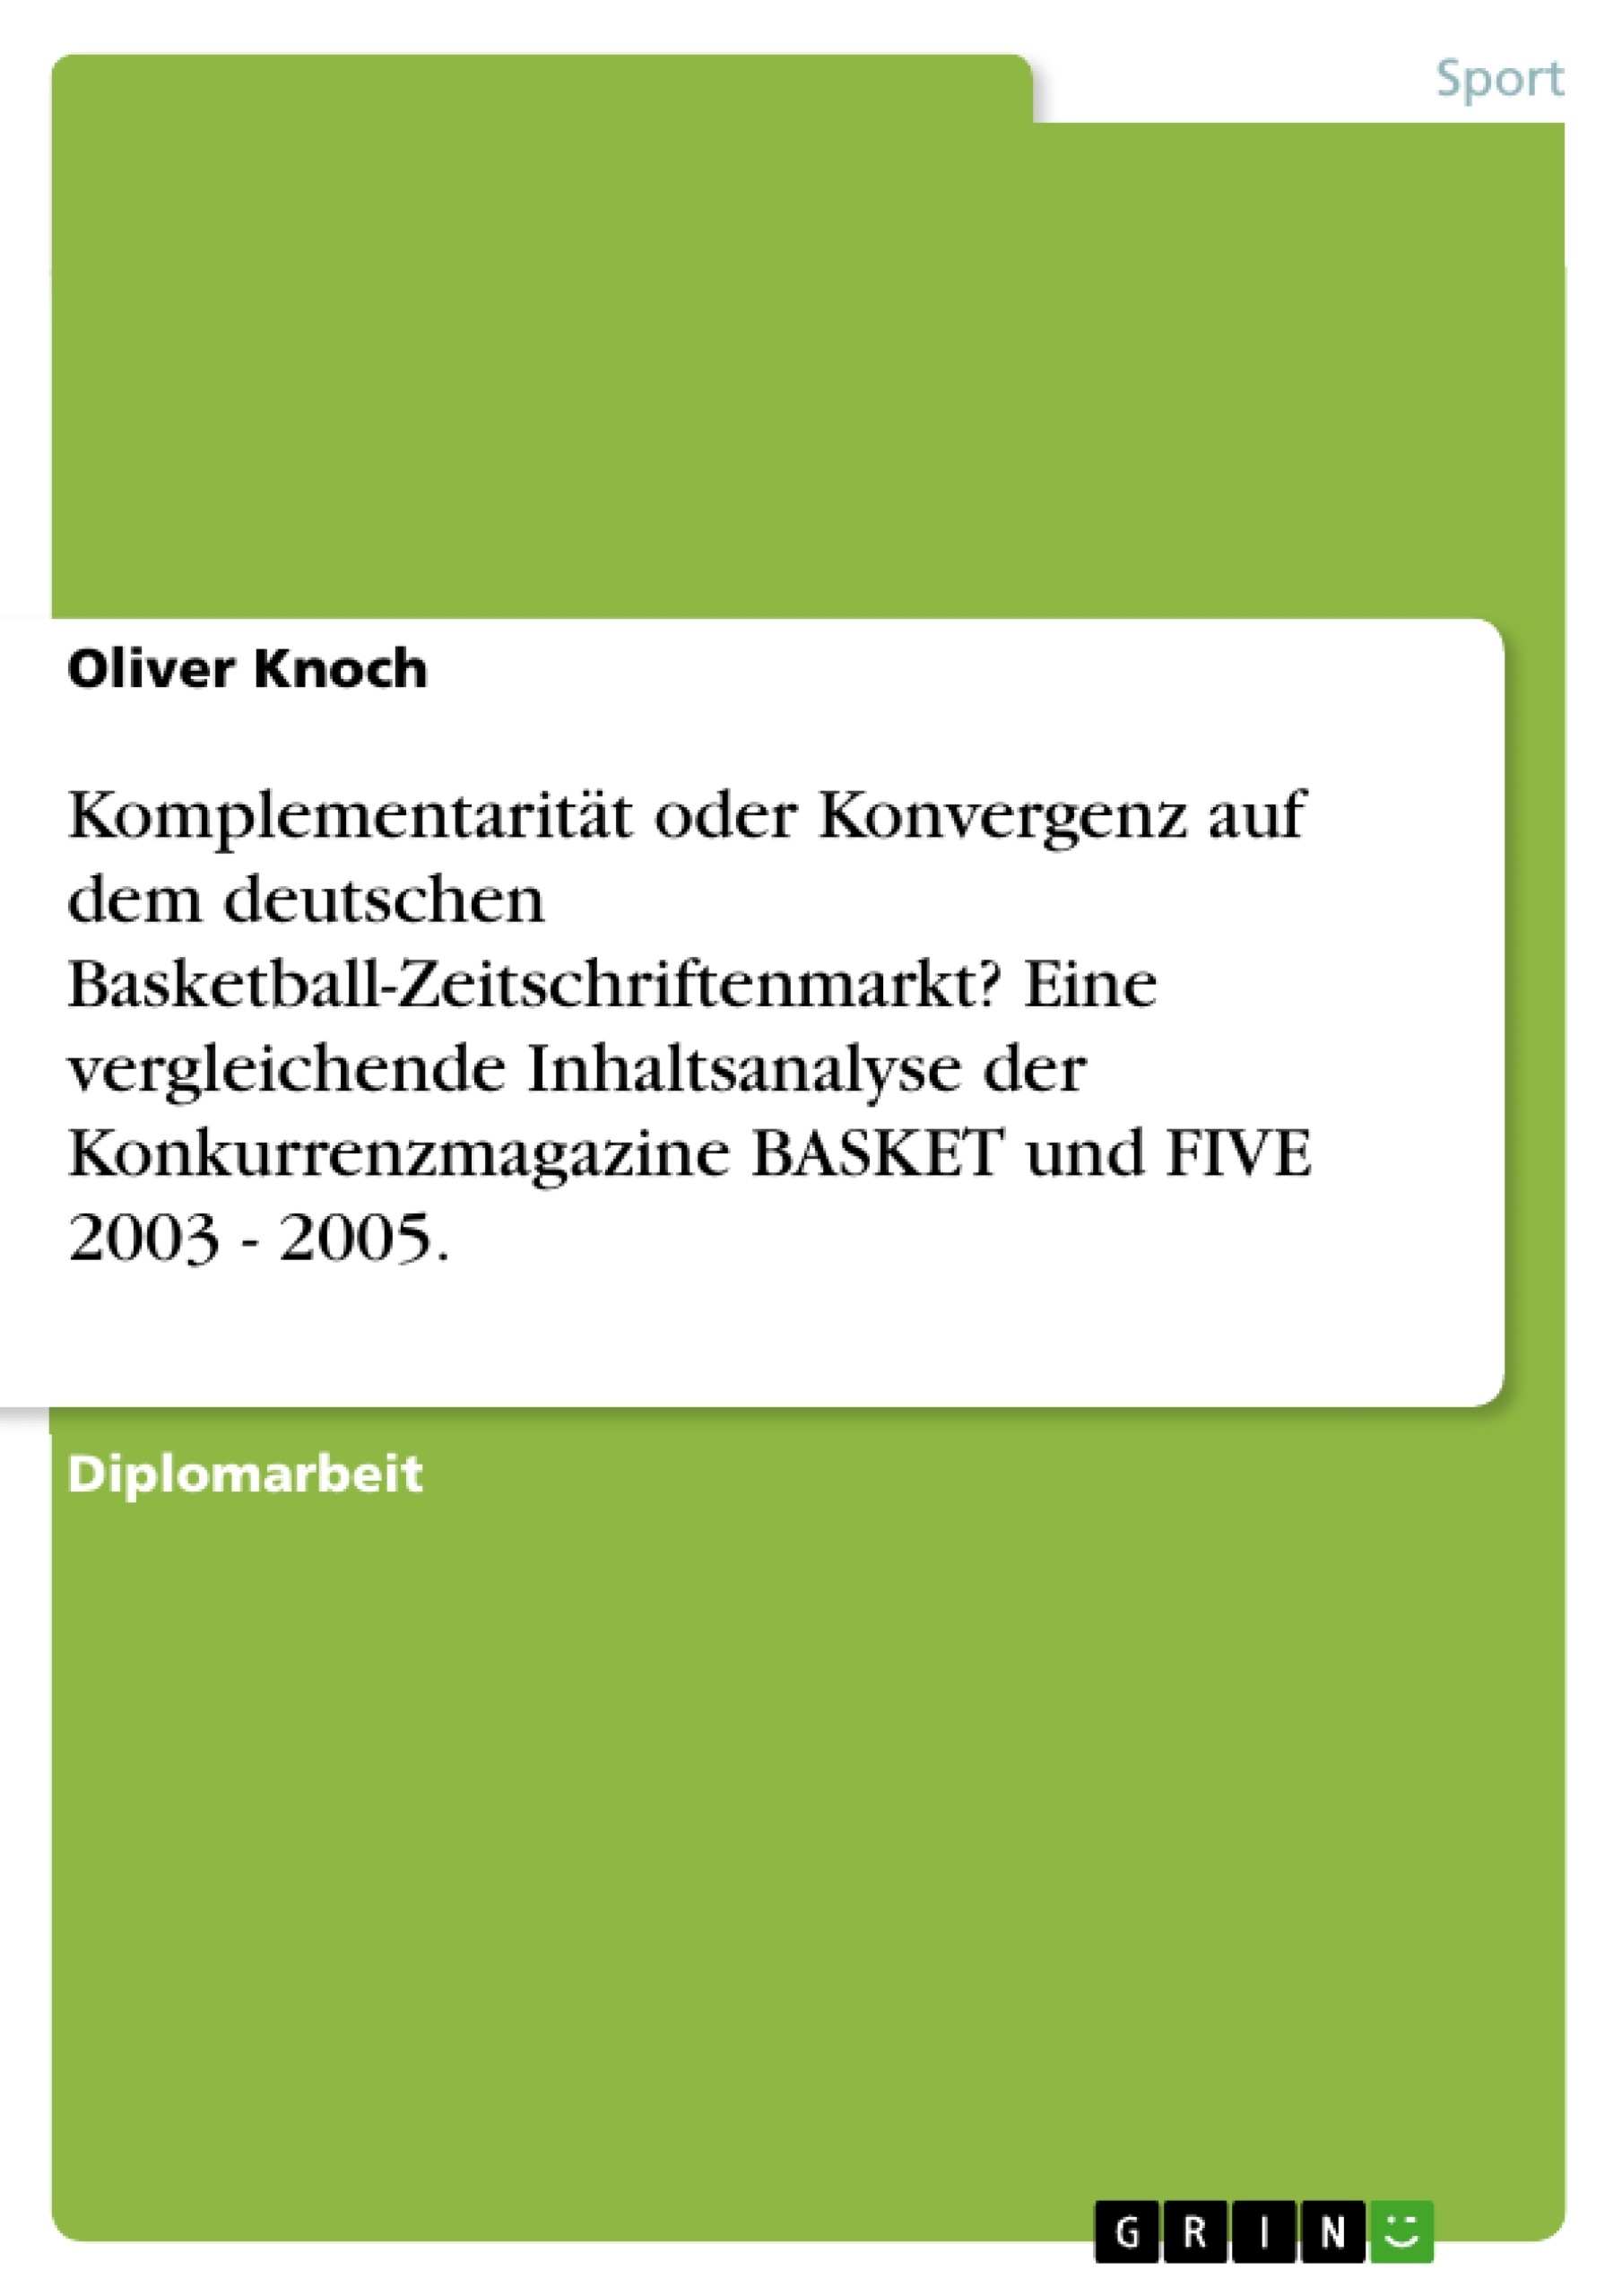 Titel: Komplementarität oder Konvergenz auf dem deutschen Basketball-Zeitschriftenmarkt? Eine vergleichende Inhaltsanalyse der Konkurrenzmagazine BASKET und FIVE 2003 - 2005.